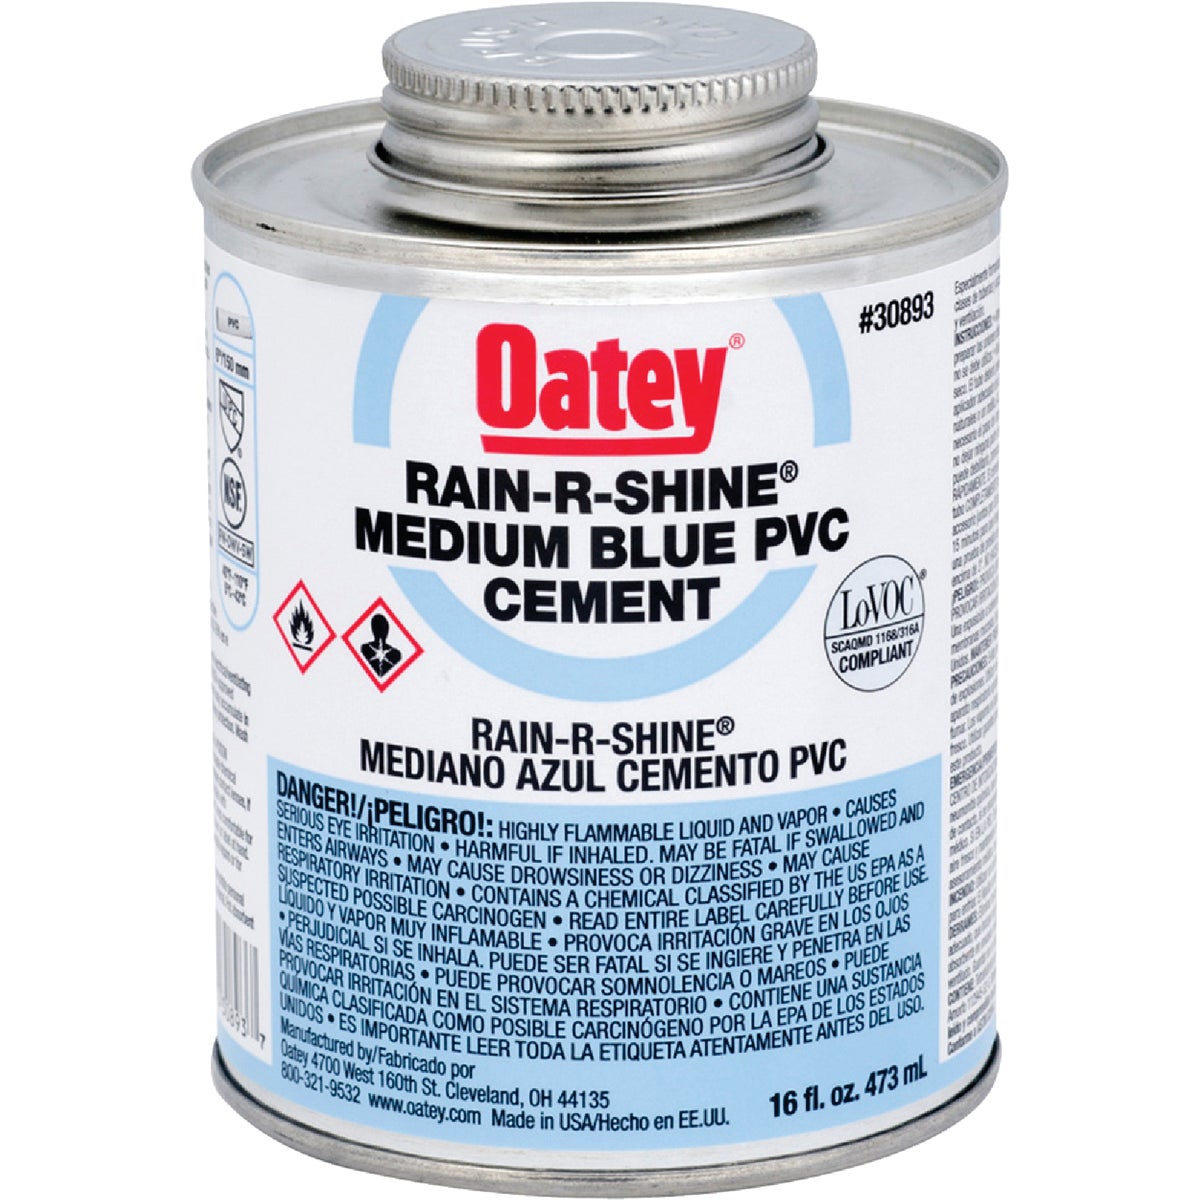 Oatey Rain-R-Shine 16 Oz. Medium Bodied Blue PVC Cement